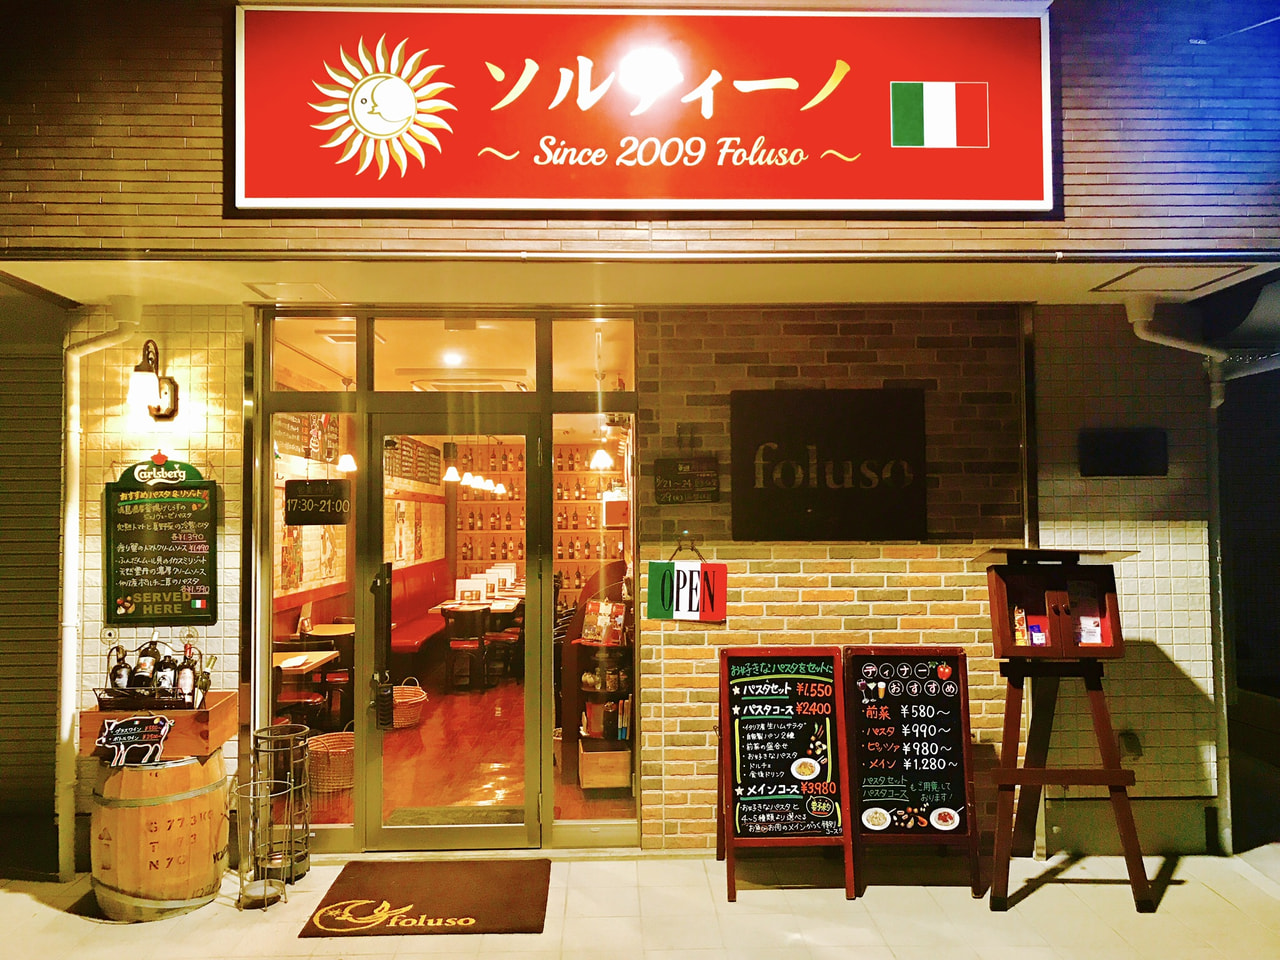 ソルティーノ 〜 since 2009 foluso 〜（新座市）のお店の外観